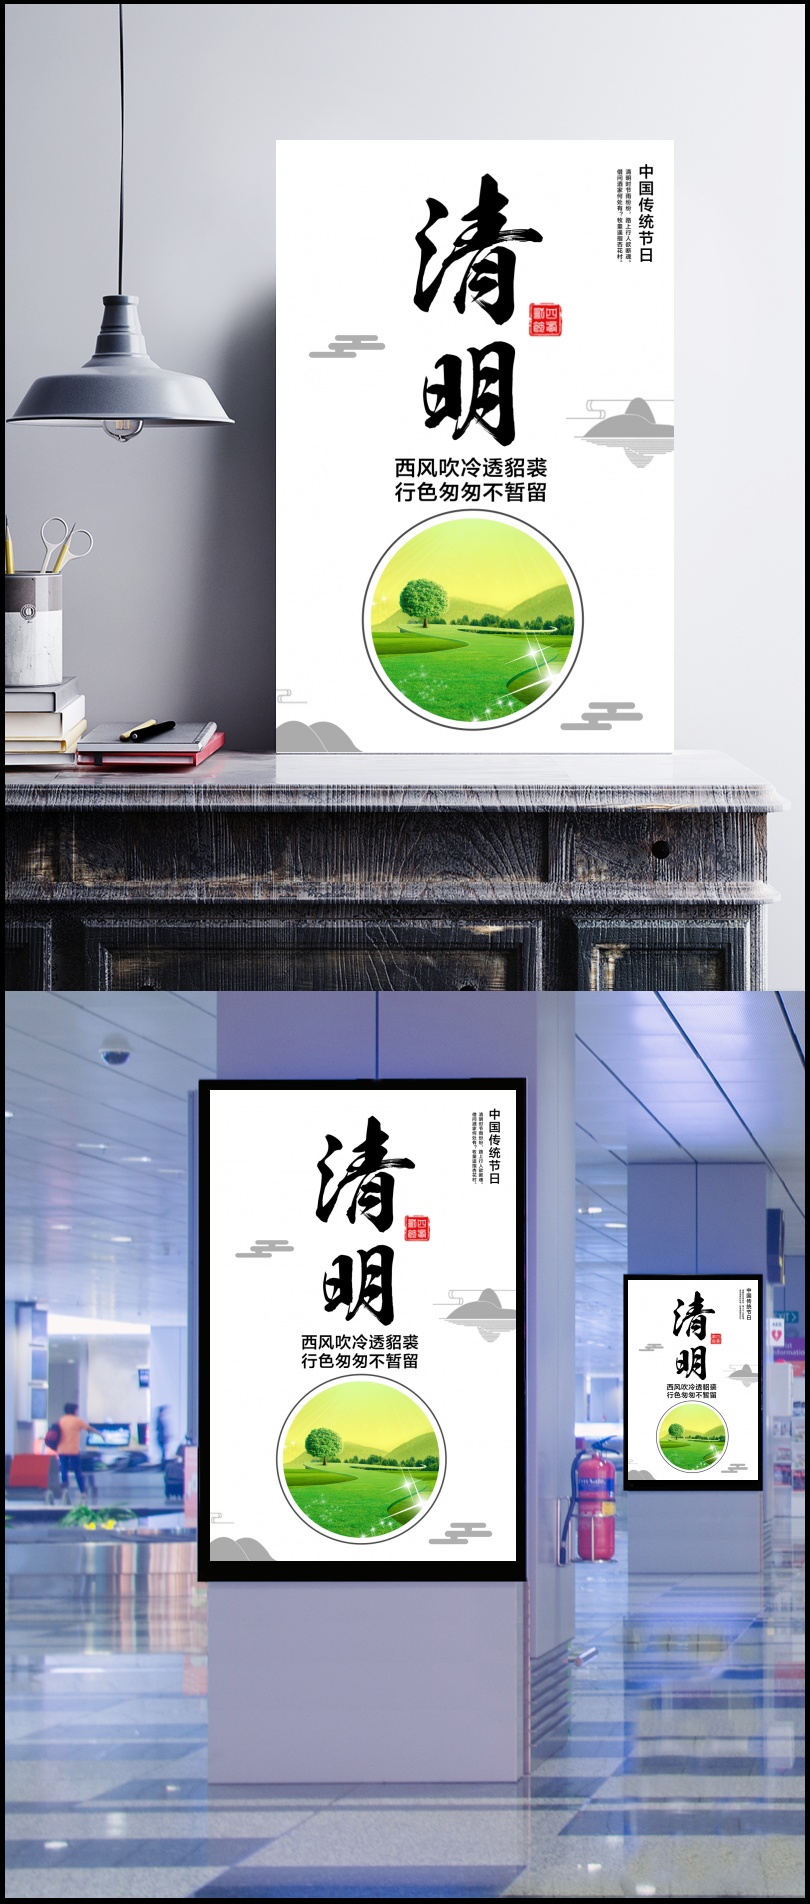 中国传统节日清明节海报设计psd素材